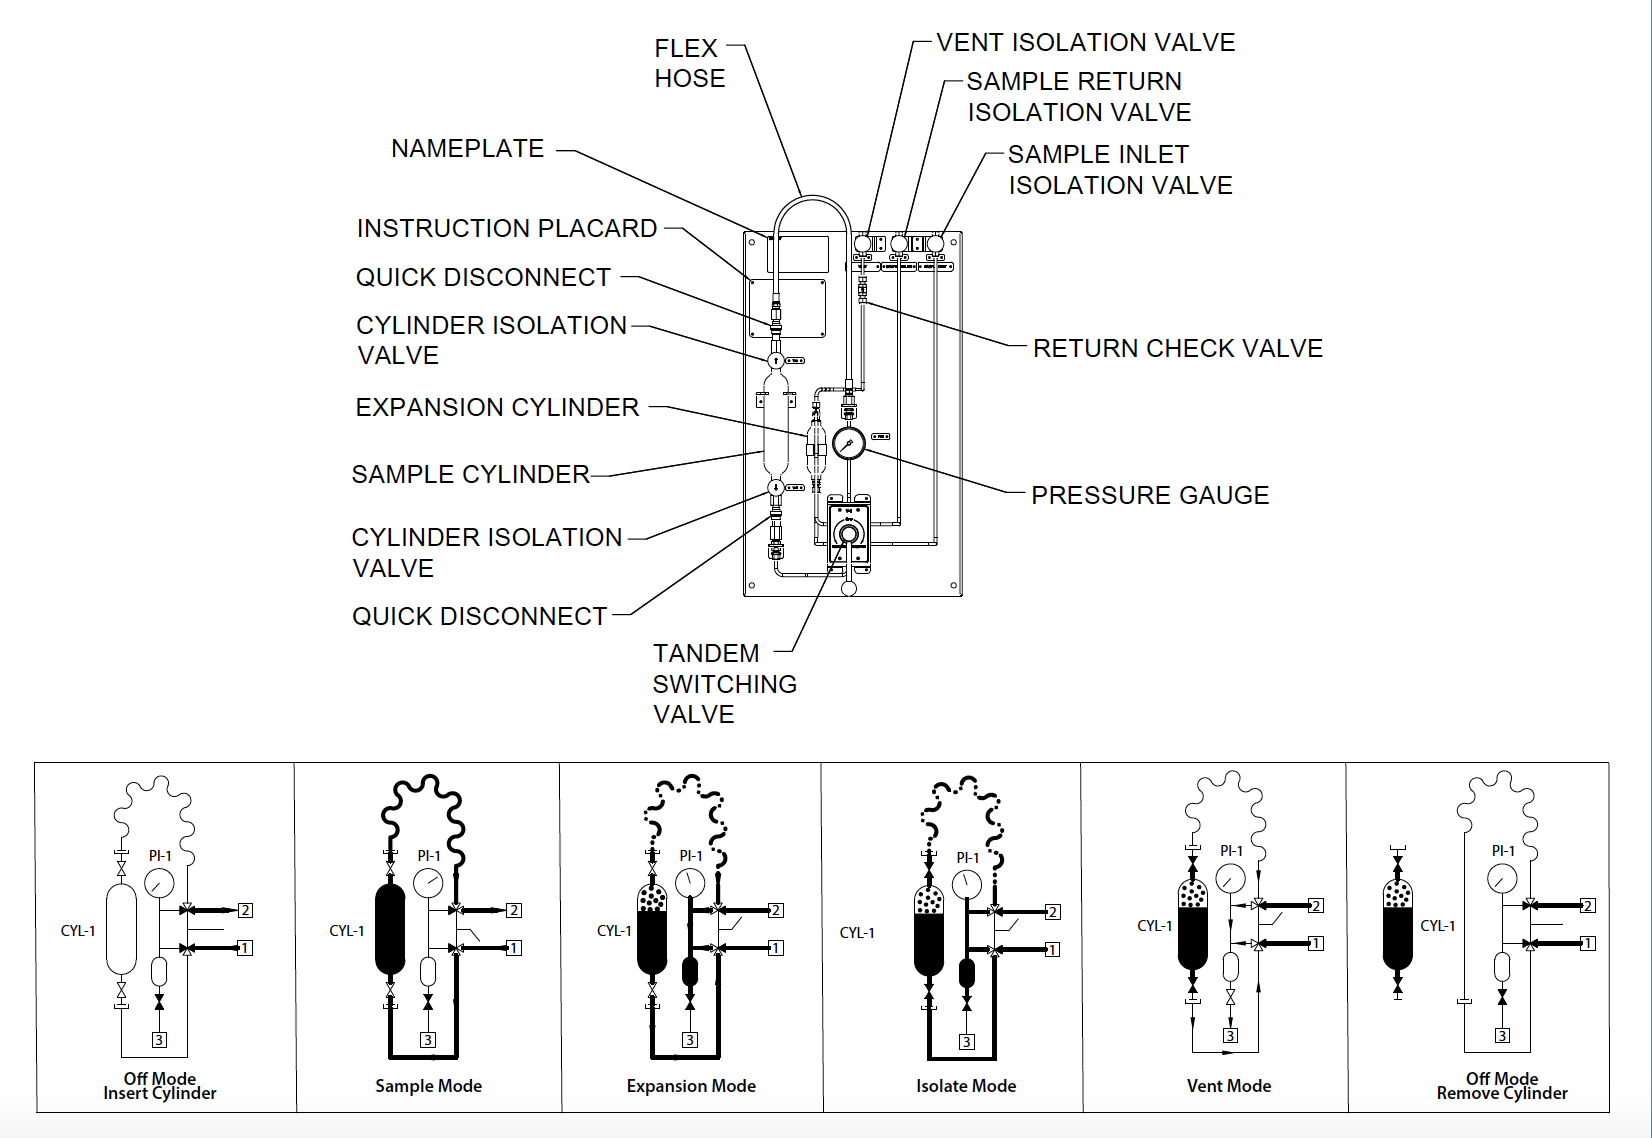 MLG | Muestreador manual de baja emisión para gases de petróleo